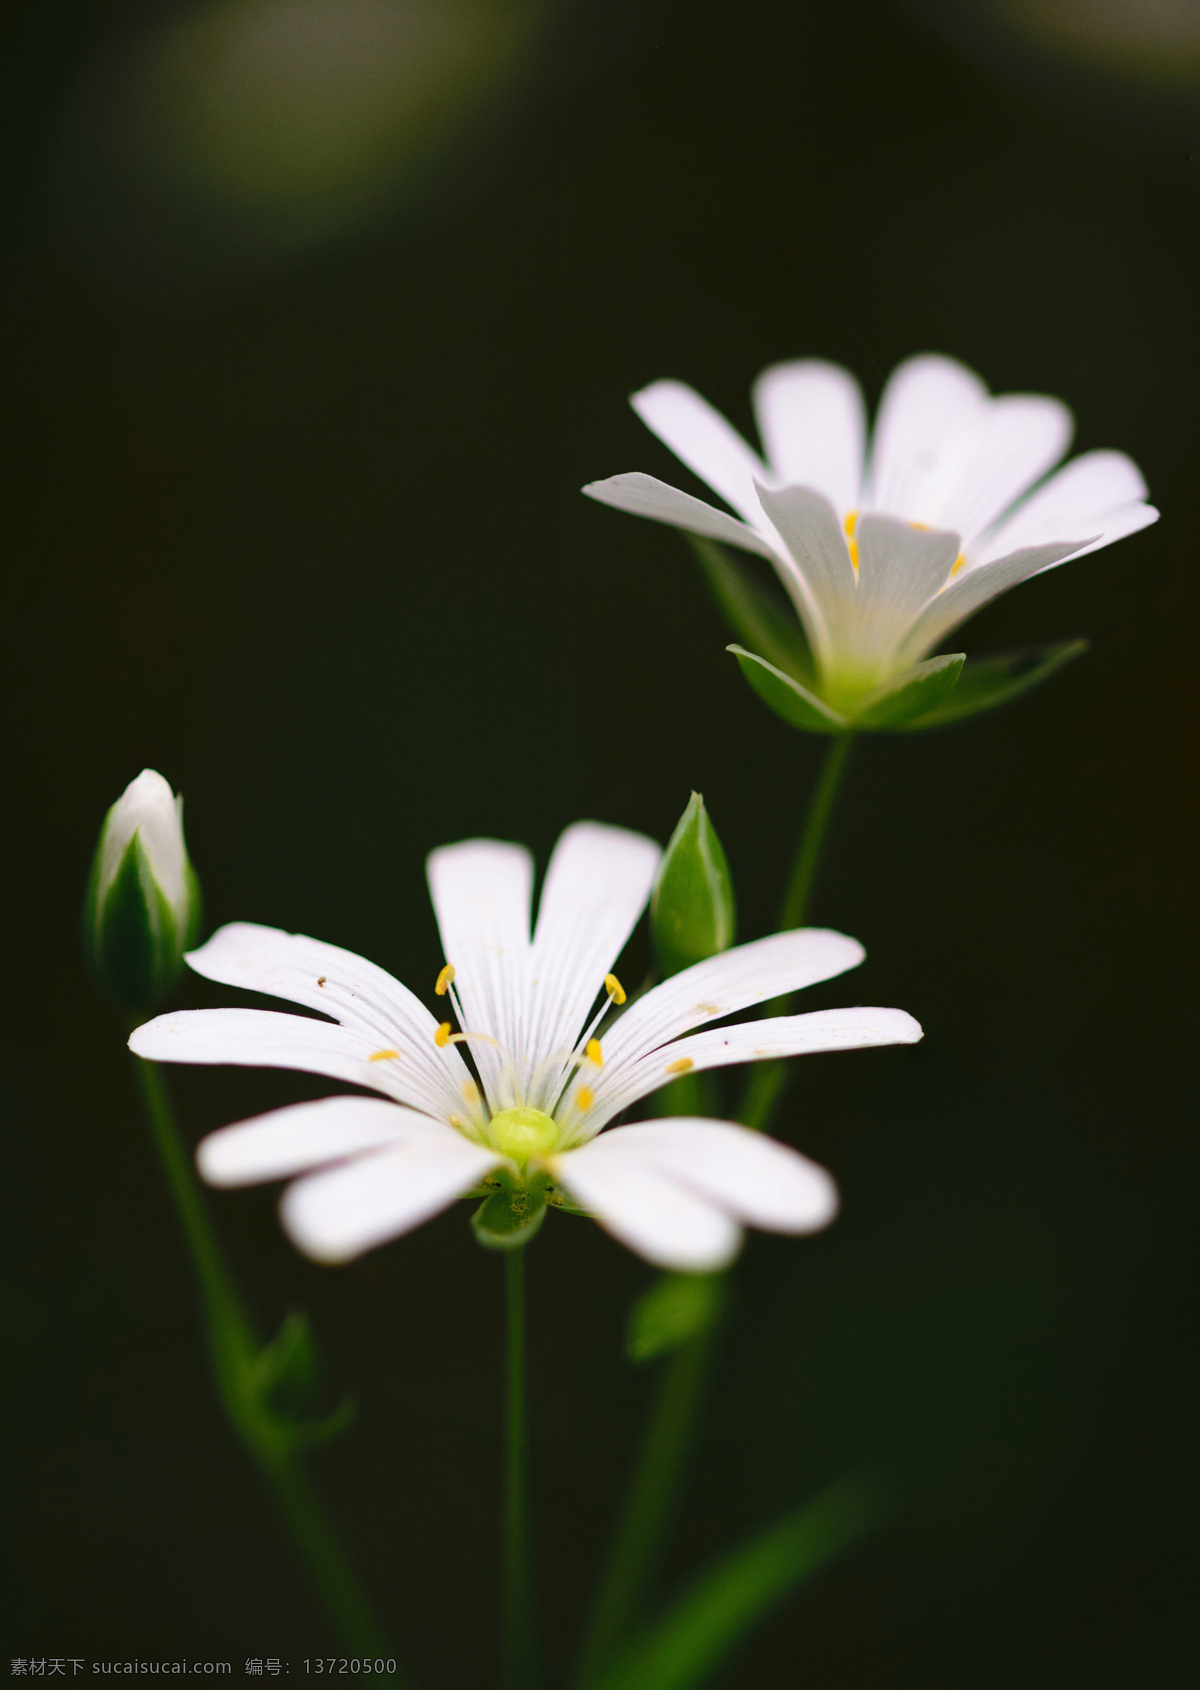 绿色植物 植物 花朵 白色 花瓣 特写 壁纸 花心 花蕾 开花 叶子 叶片 花枝 野花 白色花瓣 白色花朵